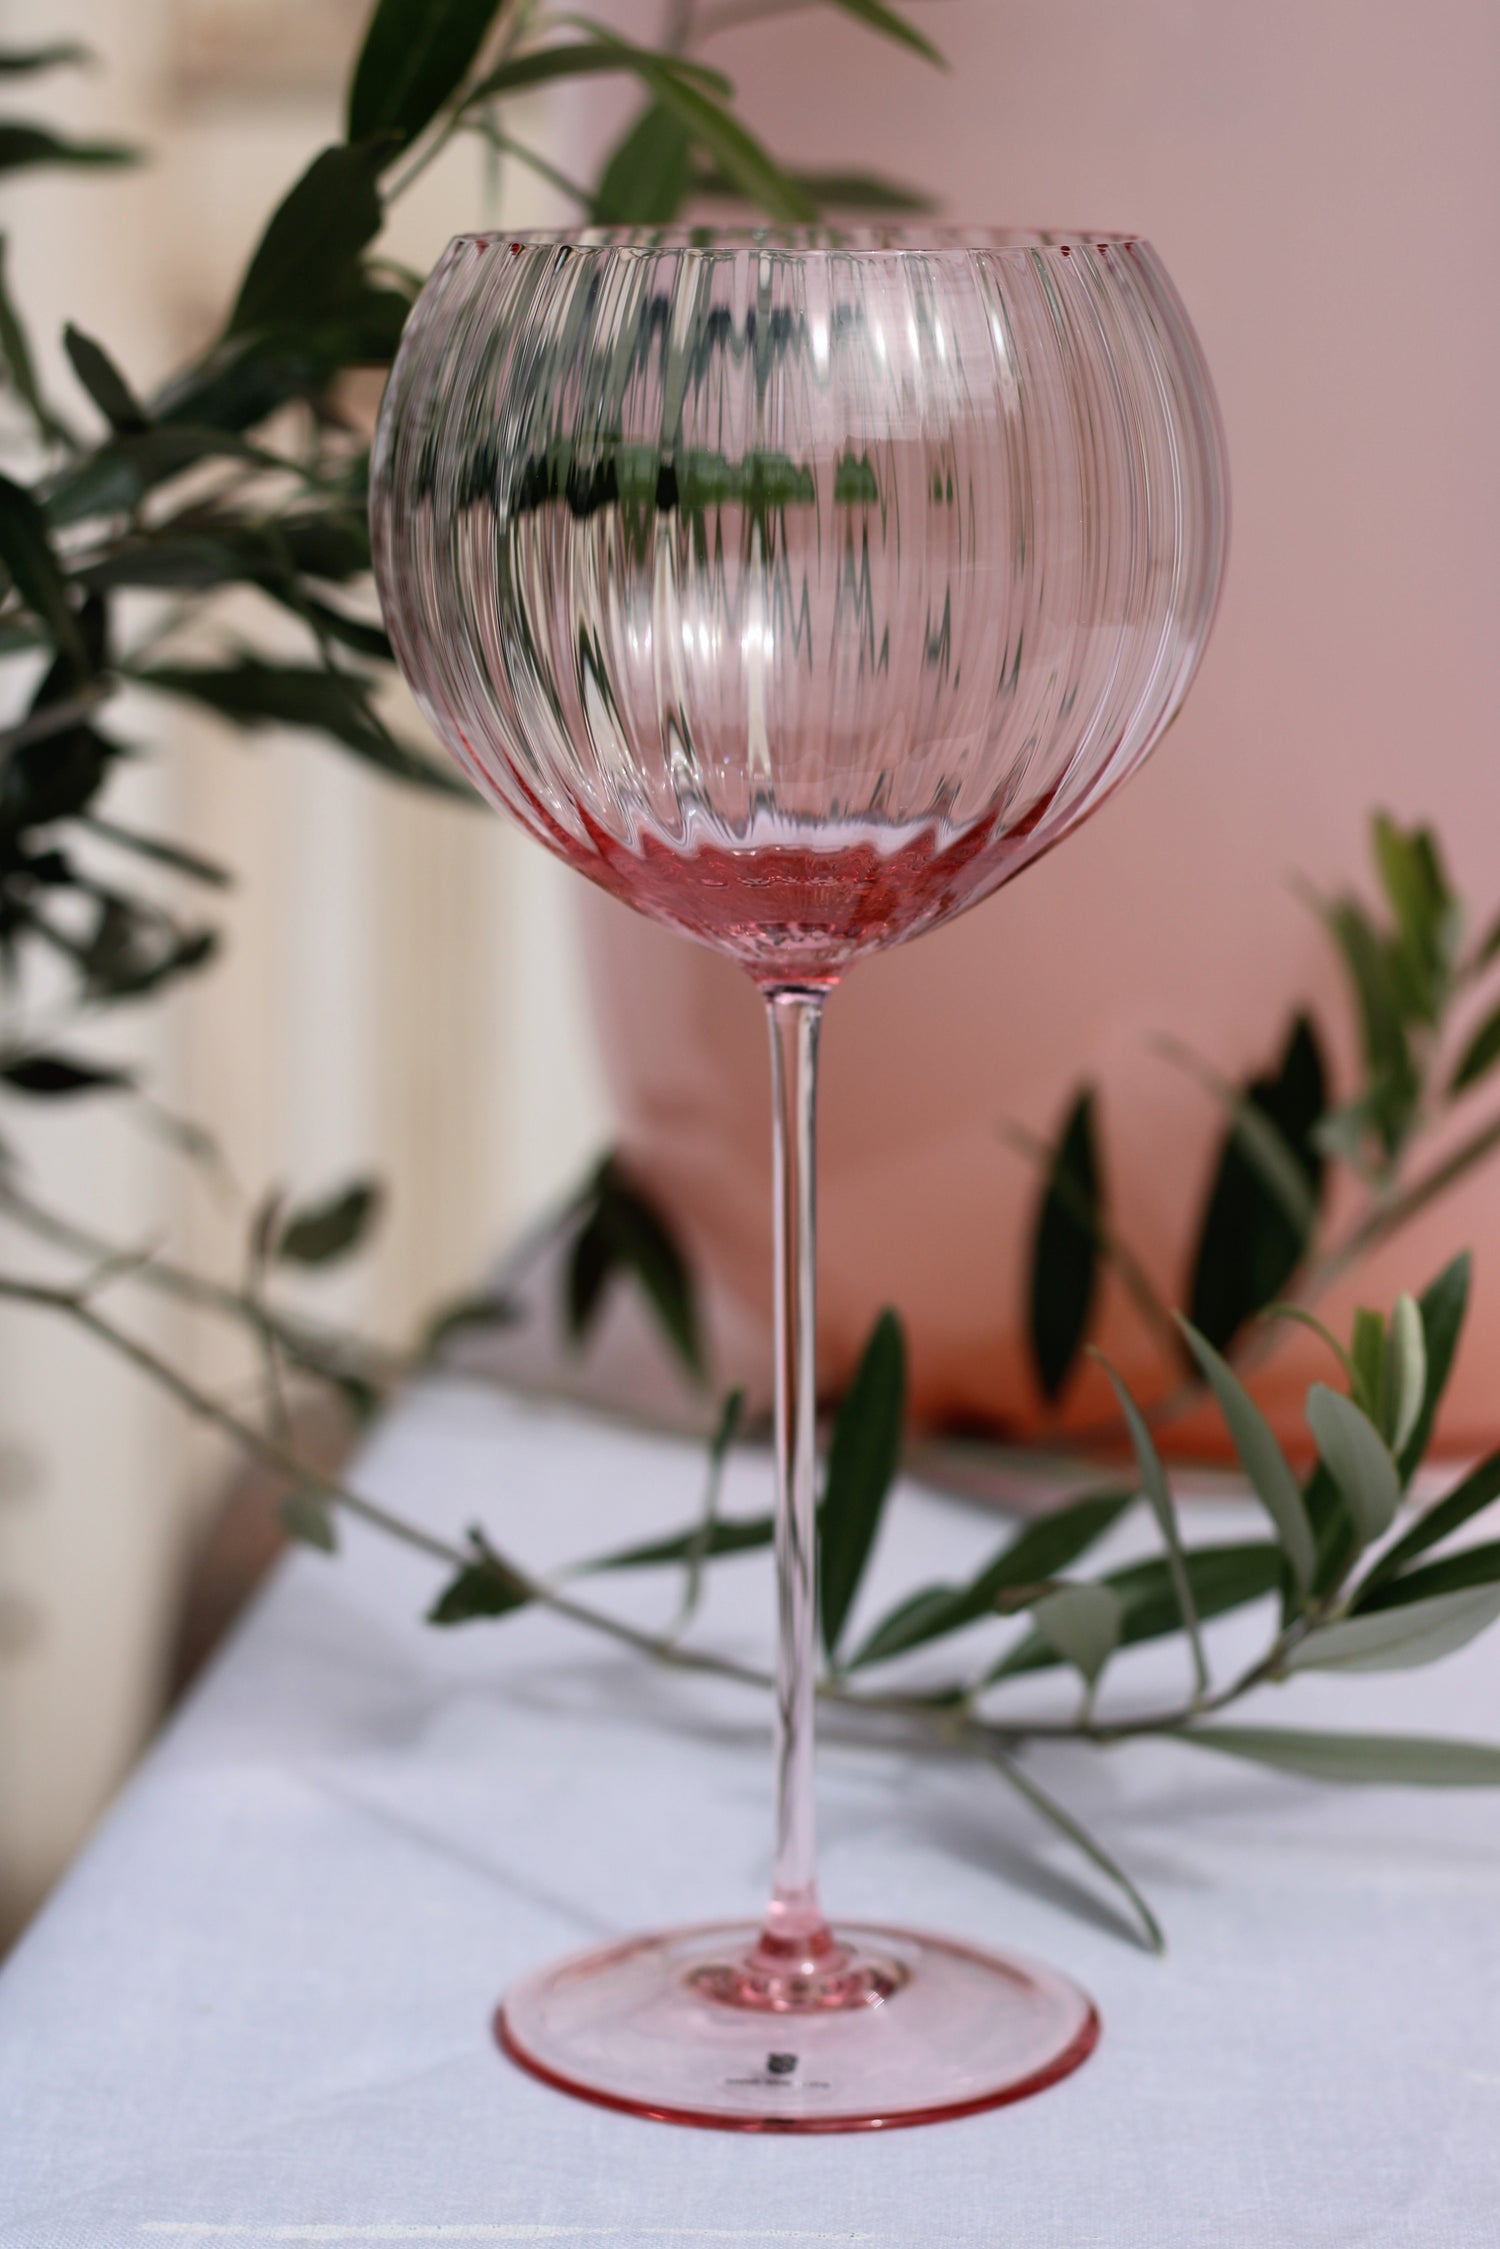 Anna von Lipa Lyon Red Wine Glasses, Set of 2